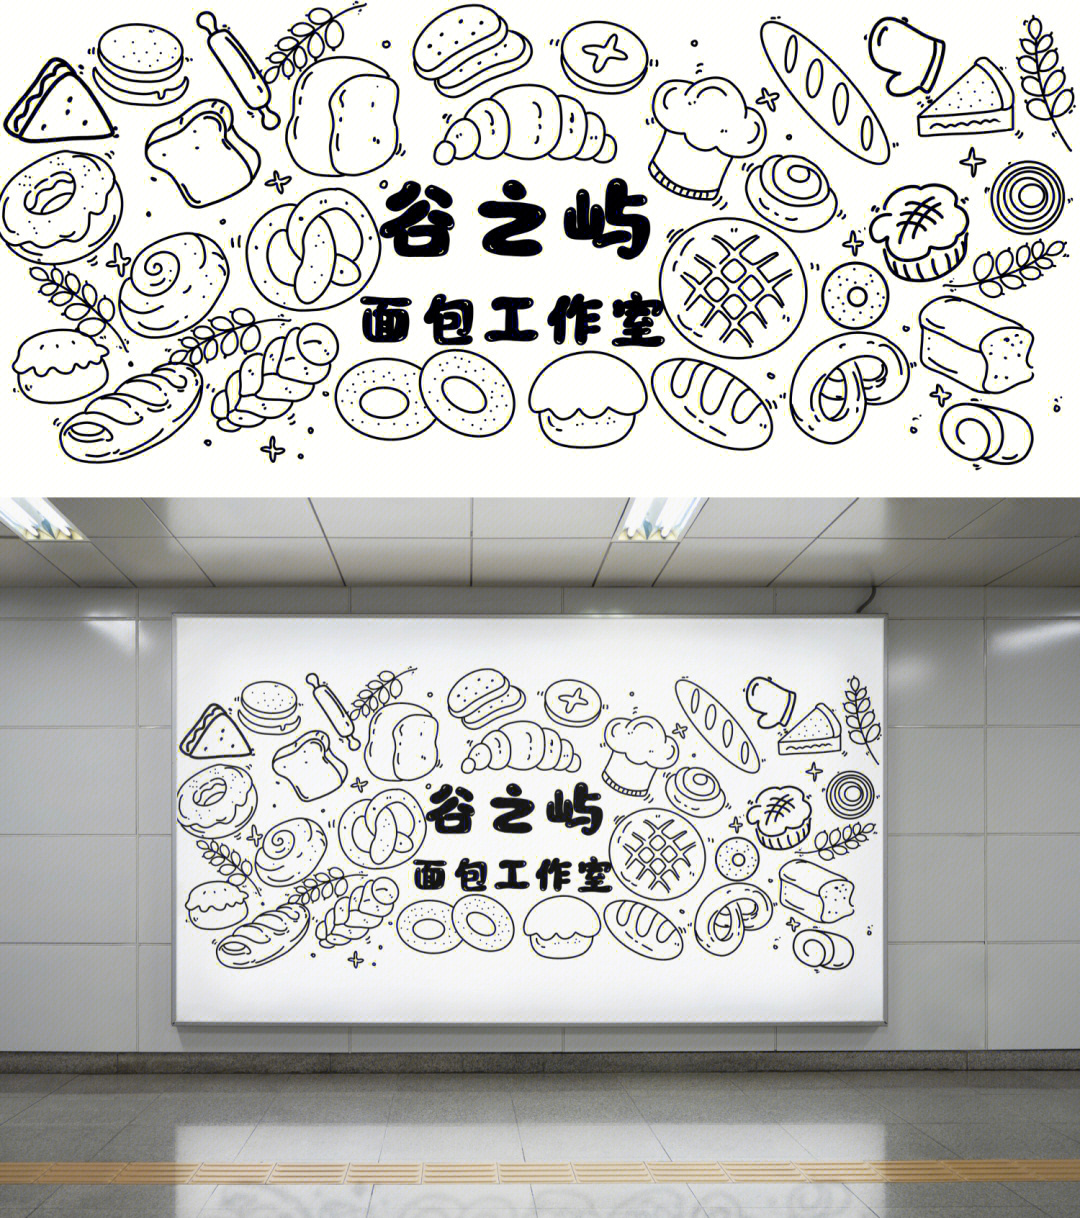 面包店门头插画设计日系风格的面包店